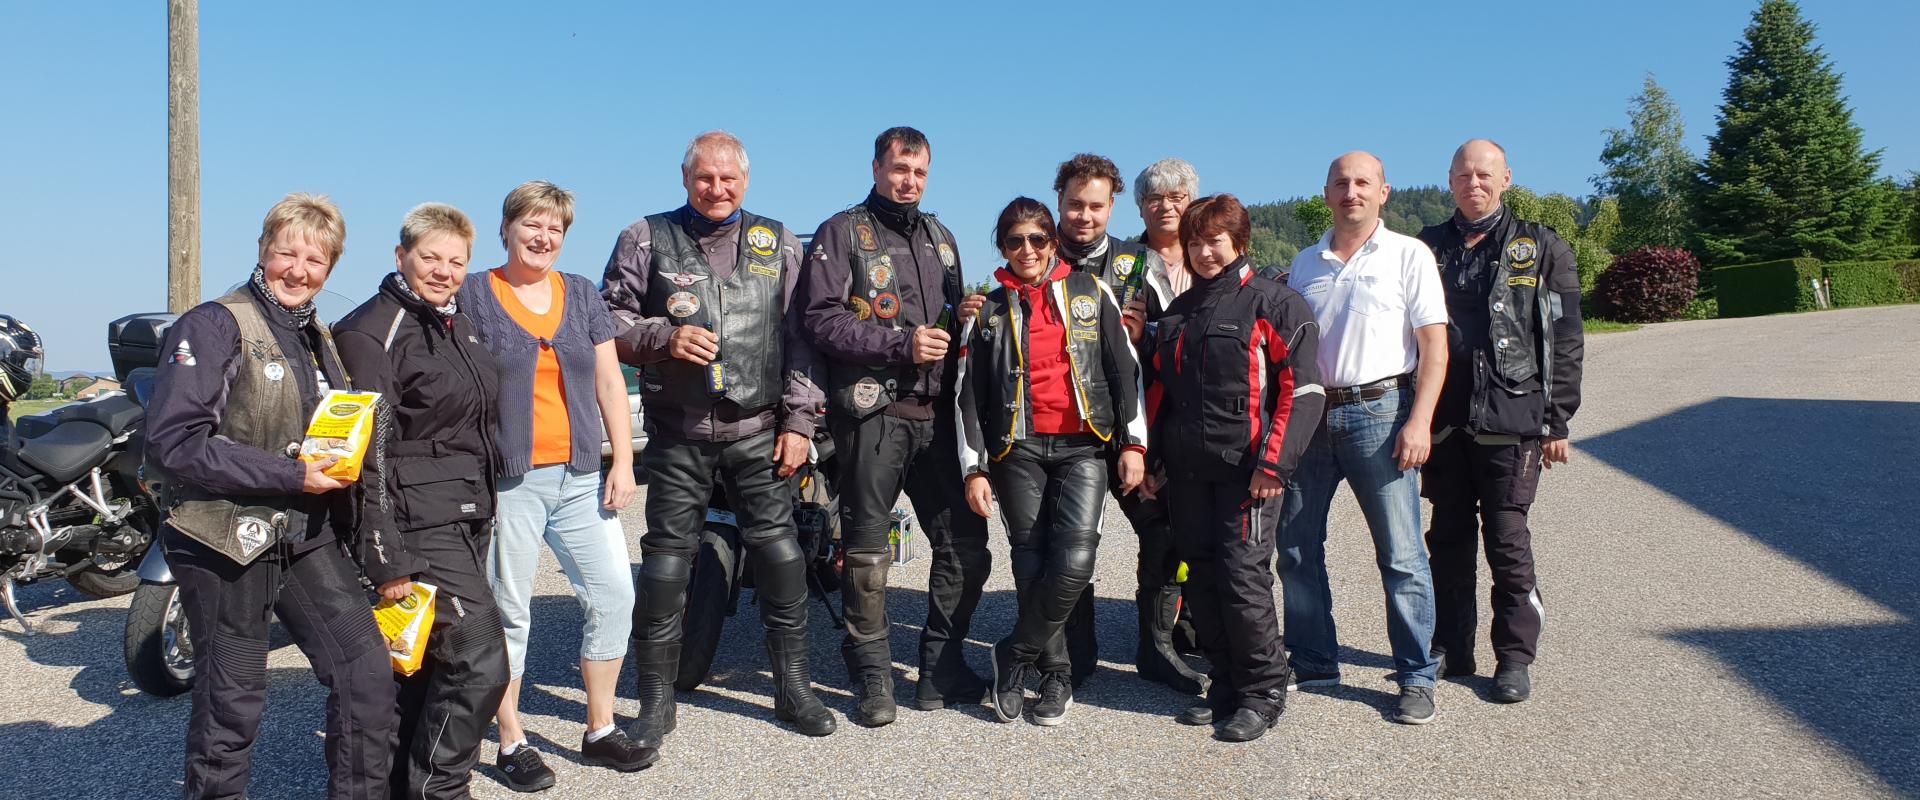 5 Gruppe Gäste Motorradfreunde Schwaben 2018 Tour 5.jpg